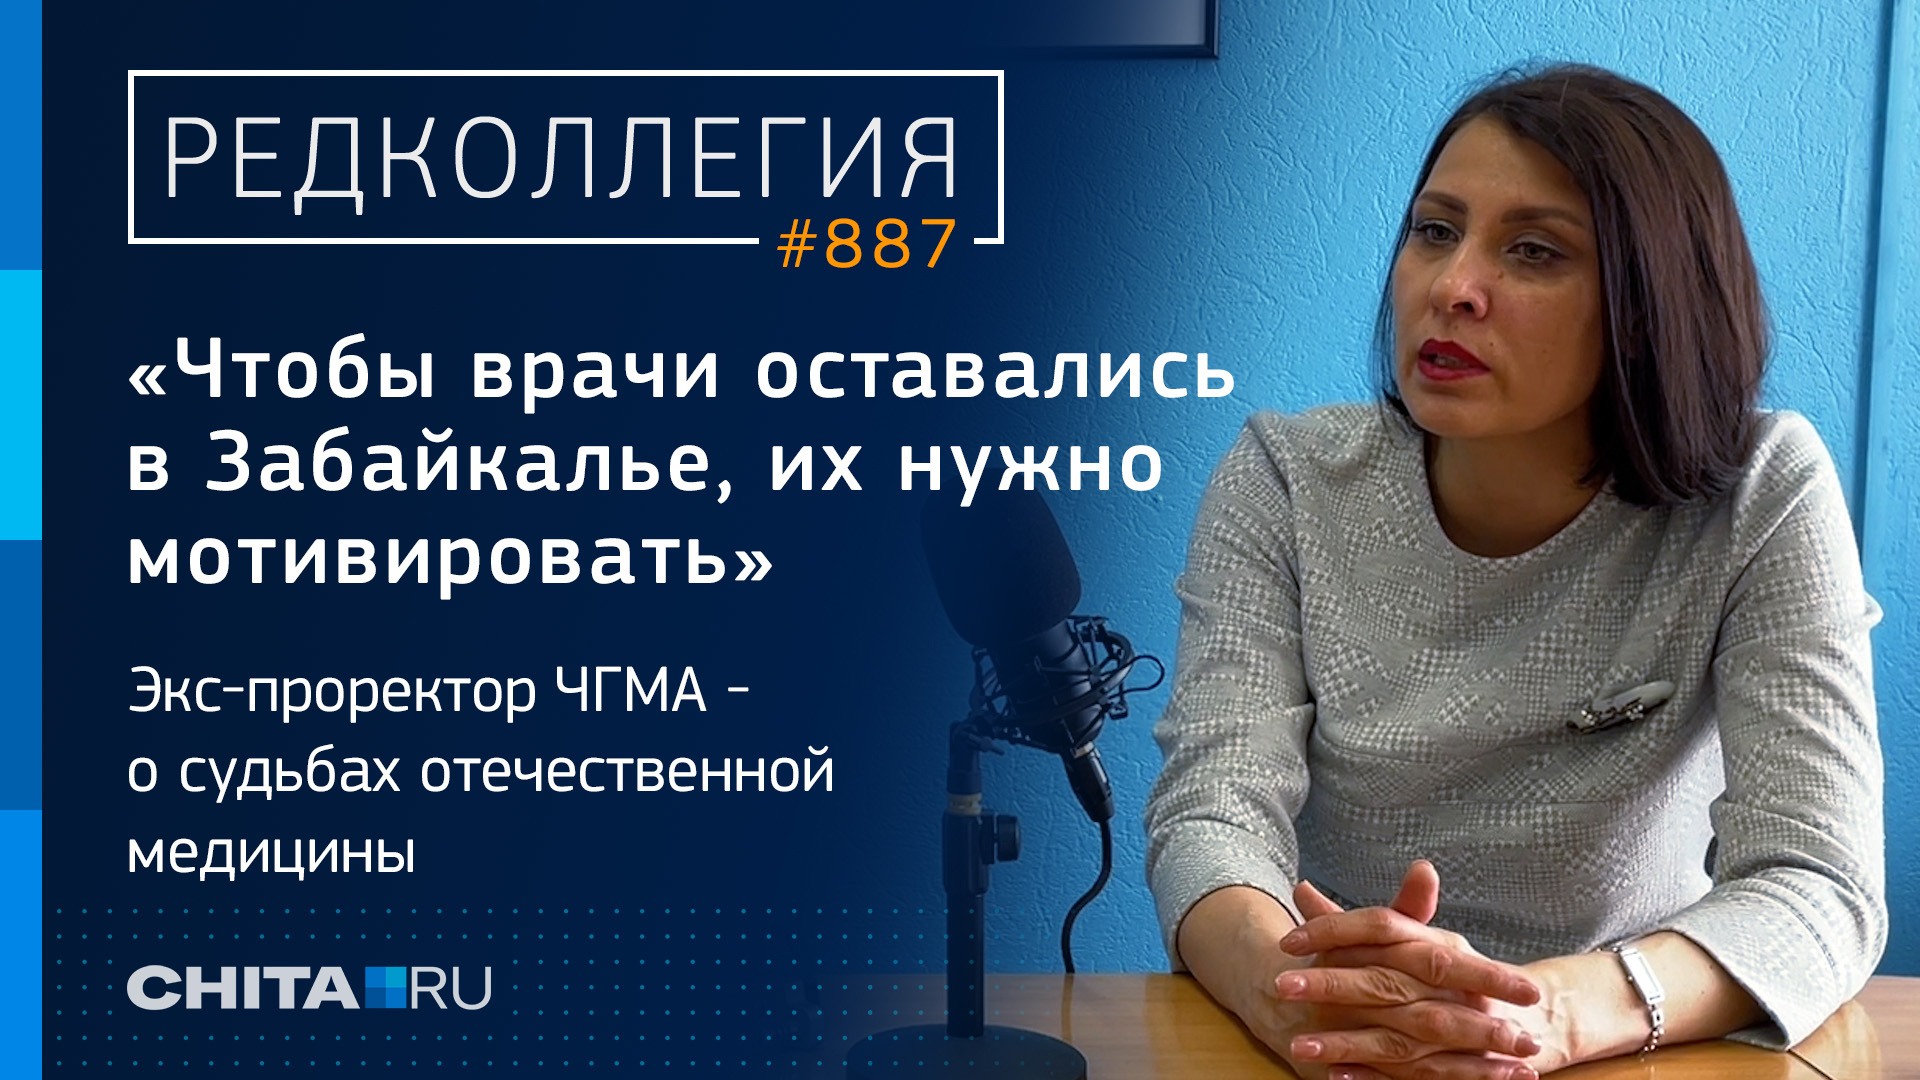 «Чтобы врачи оставались, их нужно мотивировать»: экс-проректор ЧГМА — о судьбе российской медицины